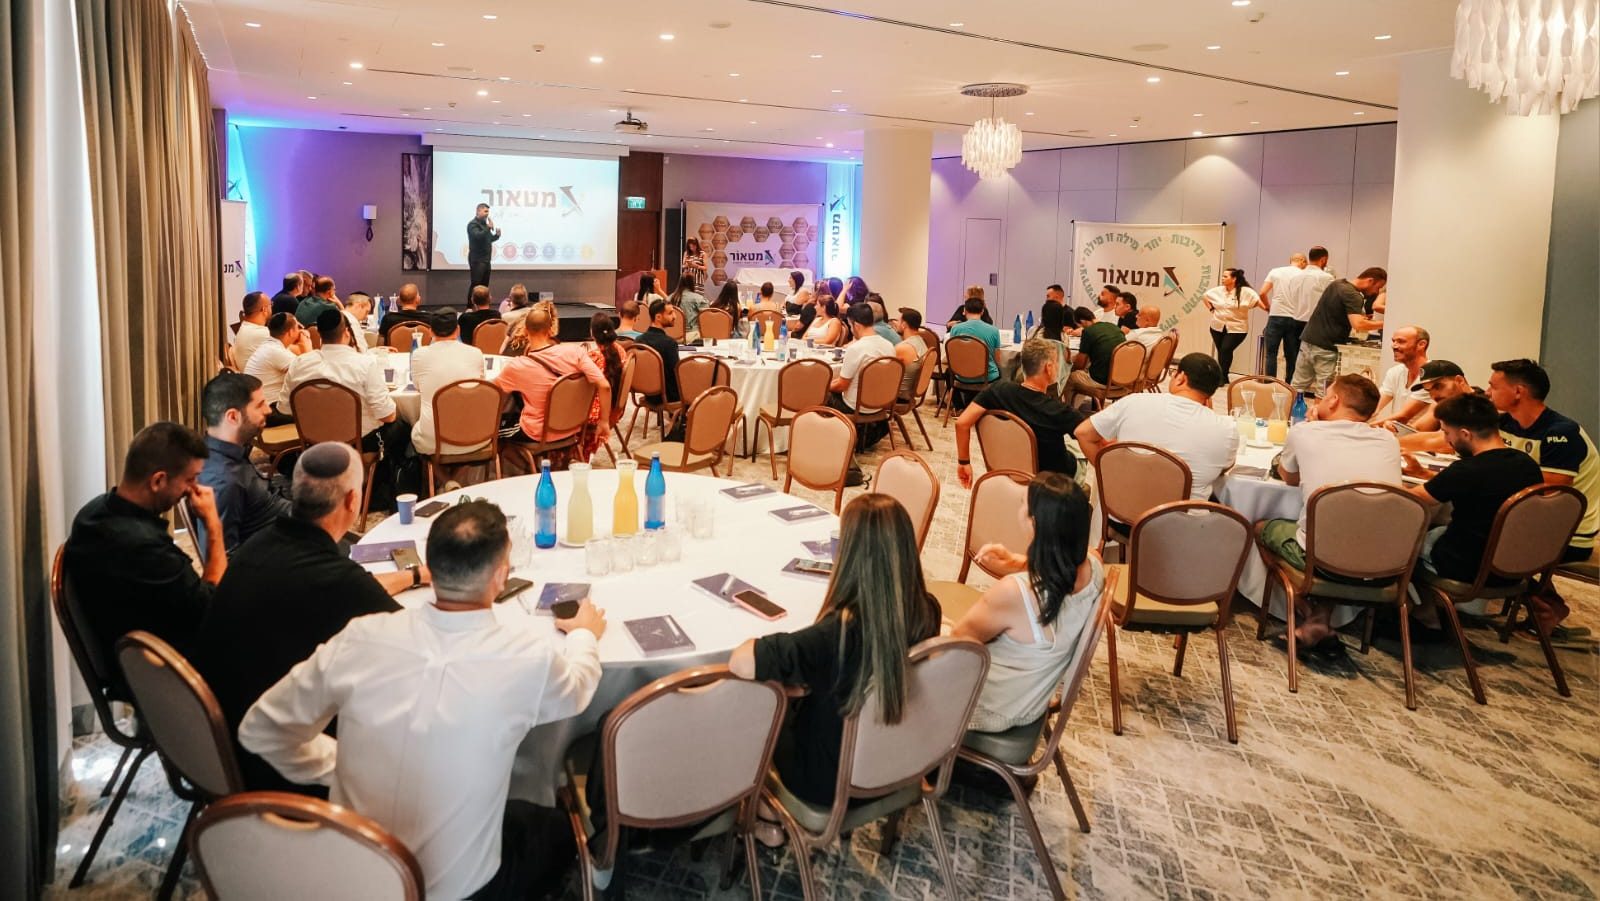 כ-90 סוכני מטאור השתתפו באירוע שערך בית הסוכן במלון בים המלח